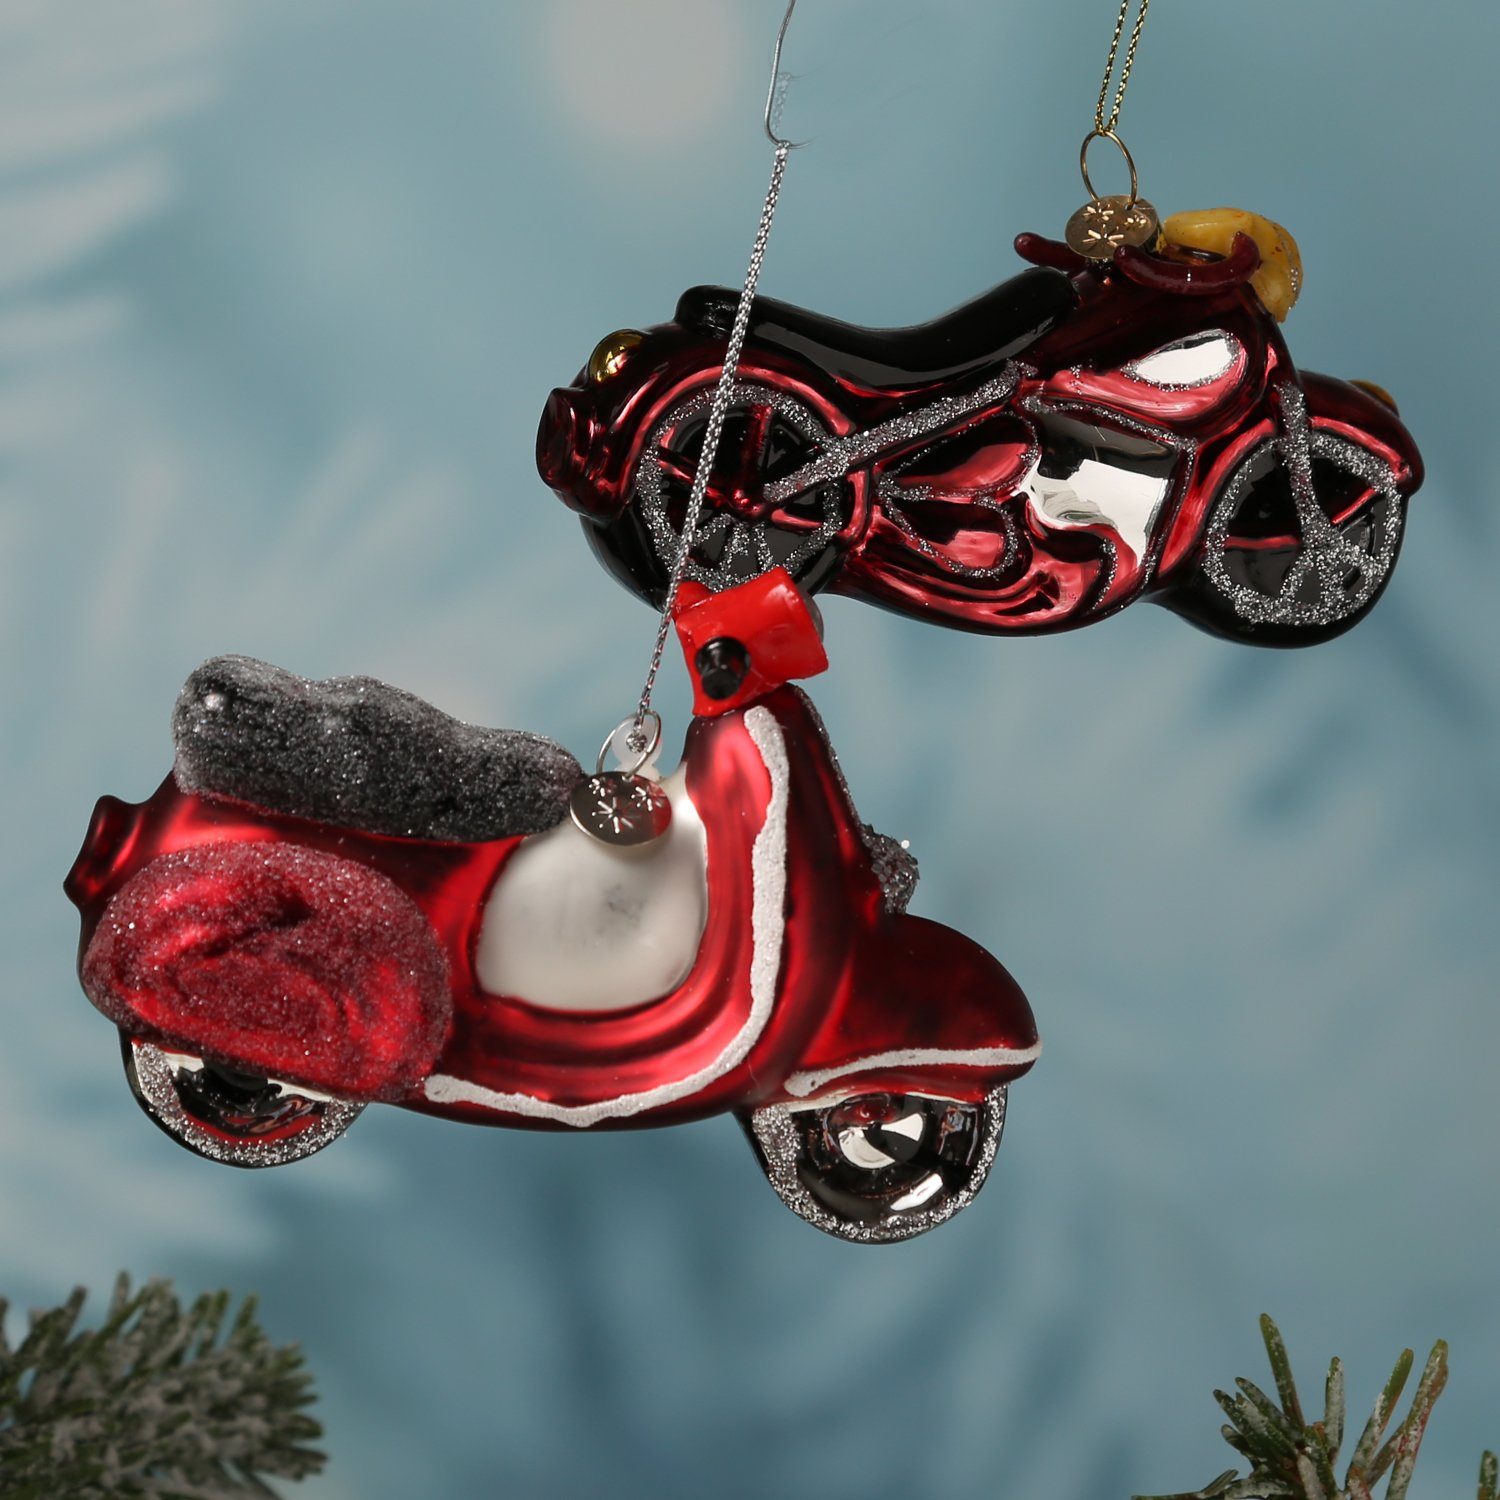 MARELIDA Christbaumschmuck Geschenk Weihnachtsbaumschmuck Weihnachtskugel Motorrad 6,5cm H: rot